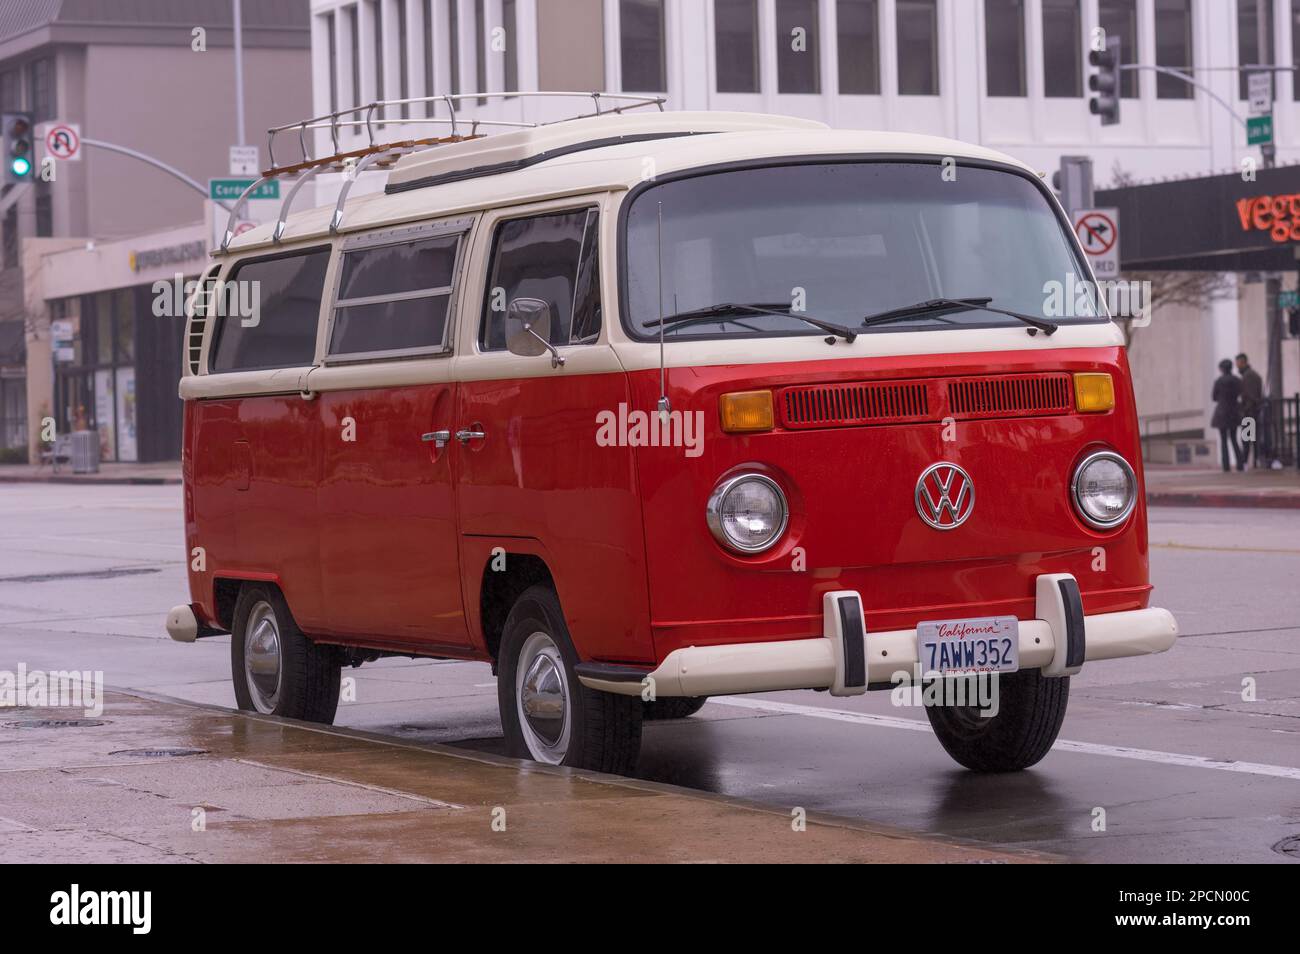 Pasadena, Kalifornien, USA - 11. März 2023: Makelloser Volkswagen aus den frühen 1970er Jahren, der an einem Regentag in der Stadt Pasadena geparkt ist. Stockfoto